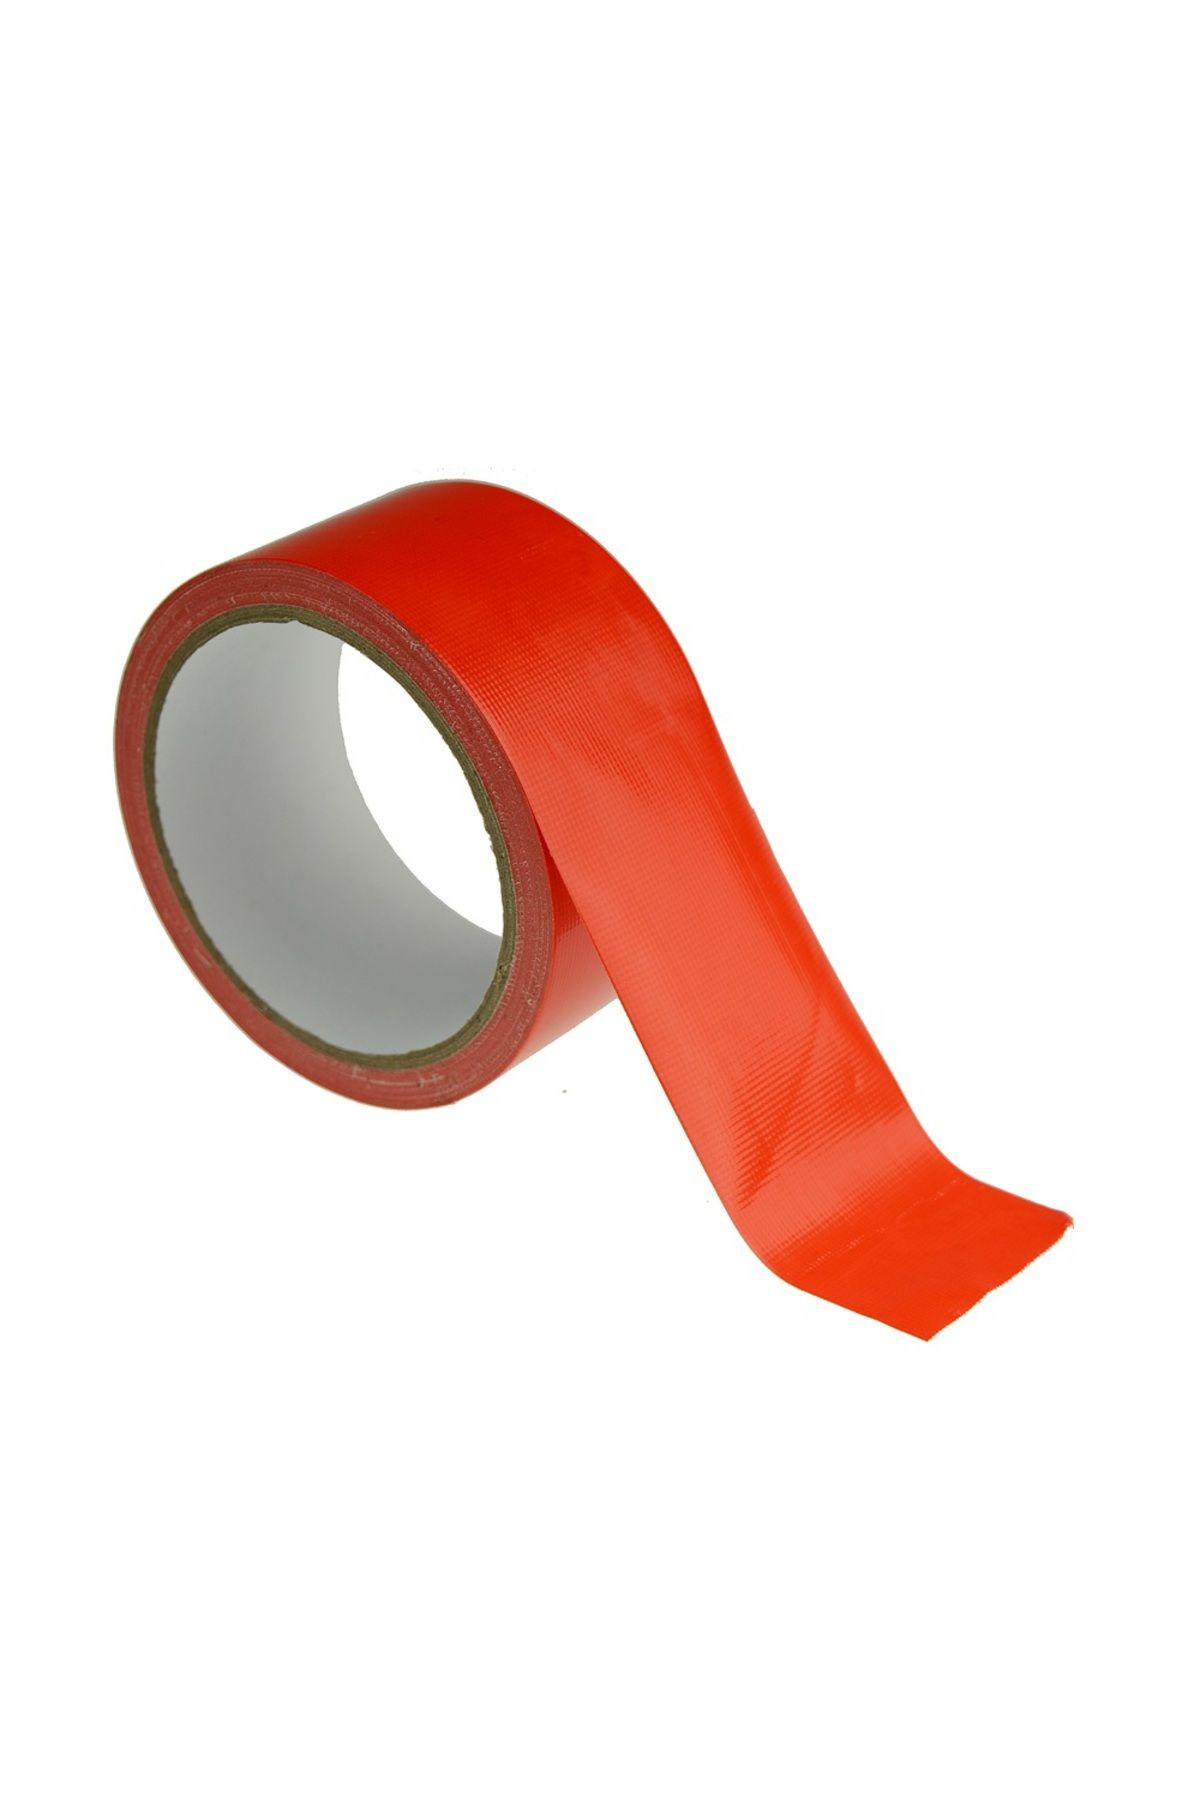 Go İthalat Suya Dayanıklı Tamir Bandı - Kırmızı 10Mt Flex Tape (2818)